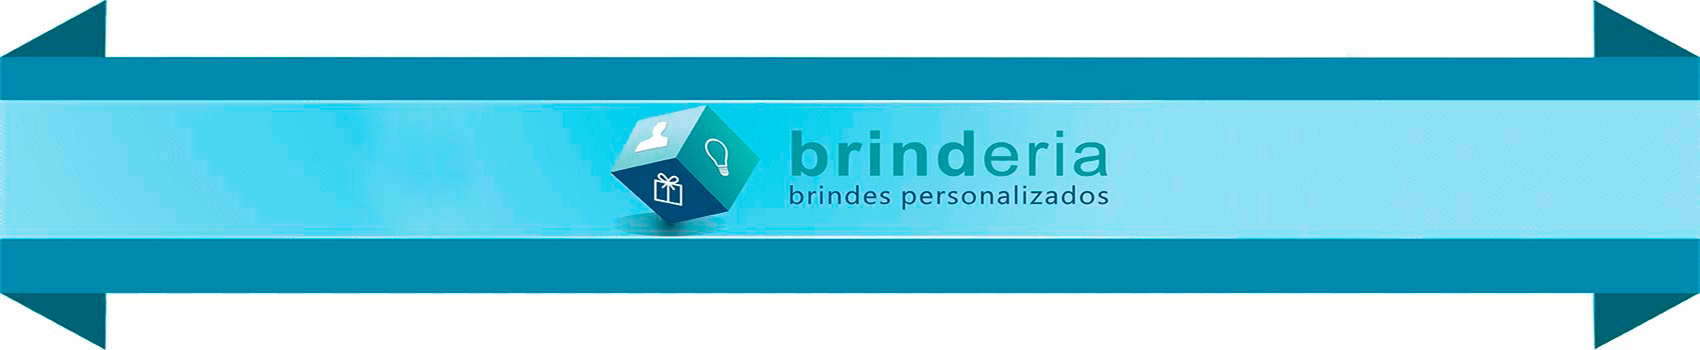 Brinderia Brindes